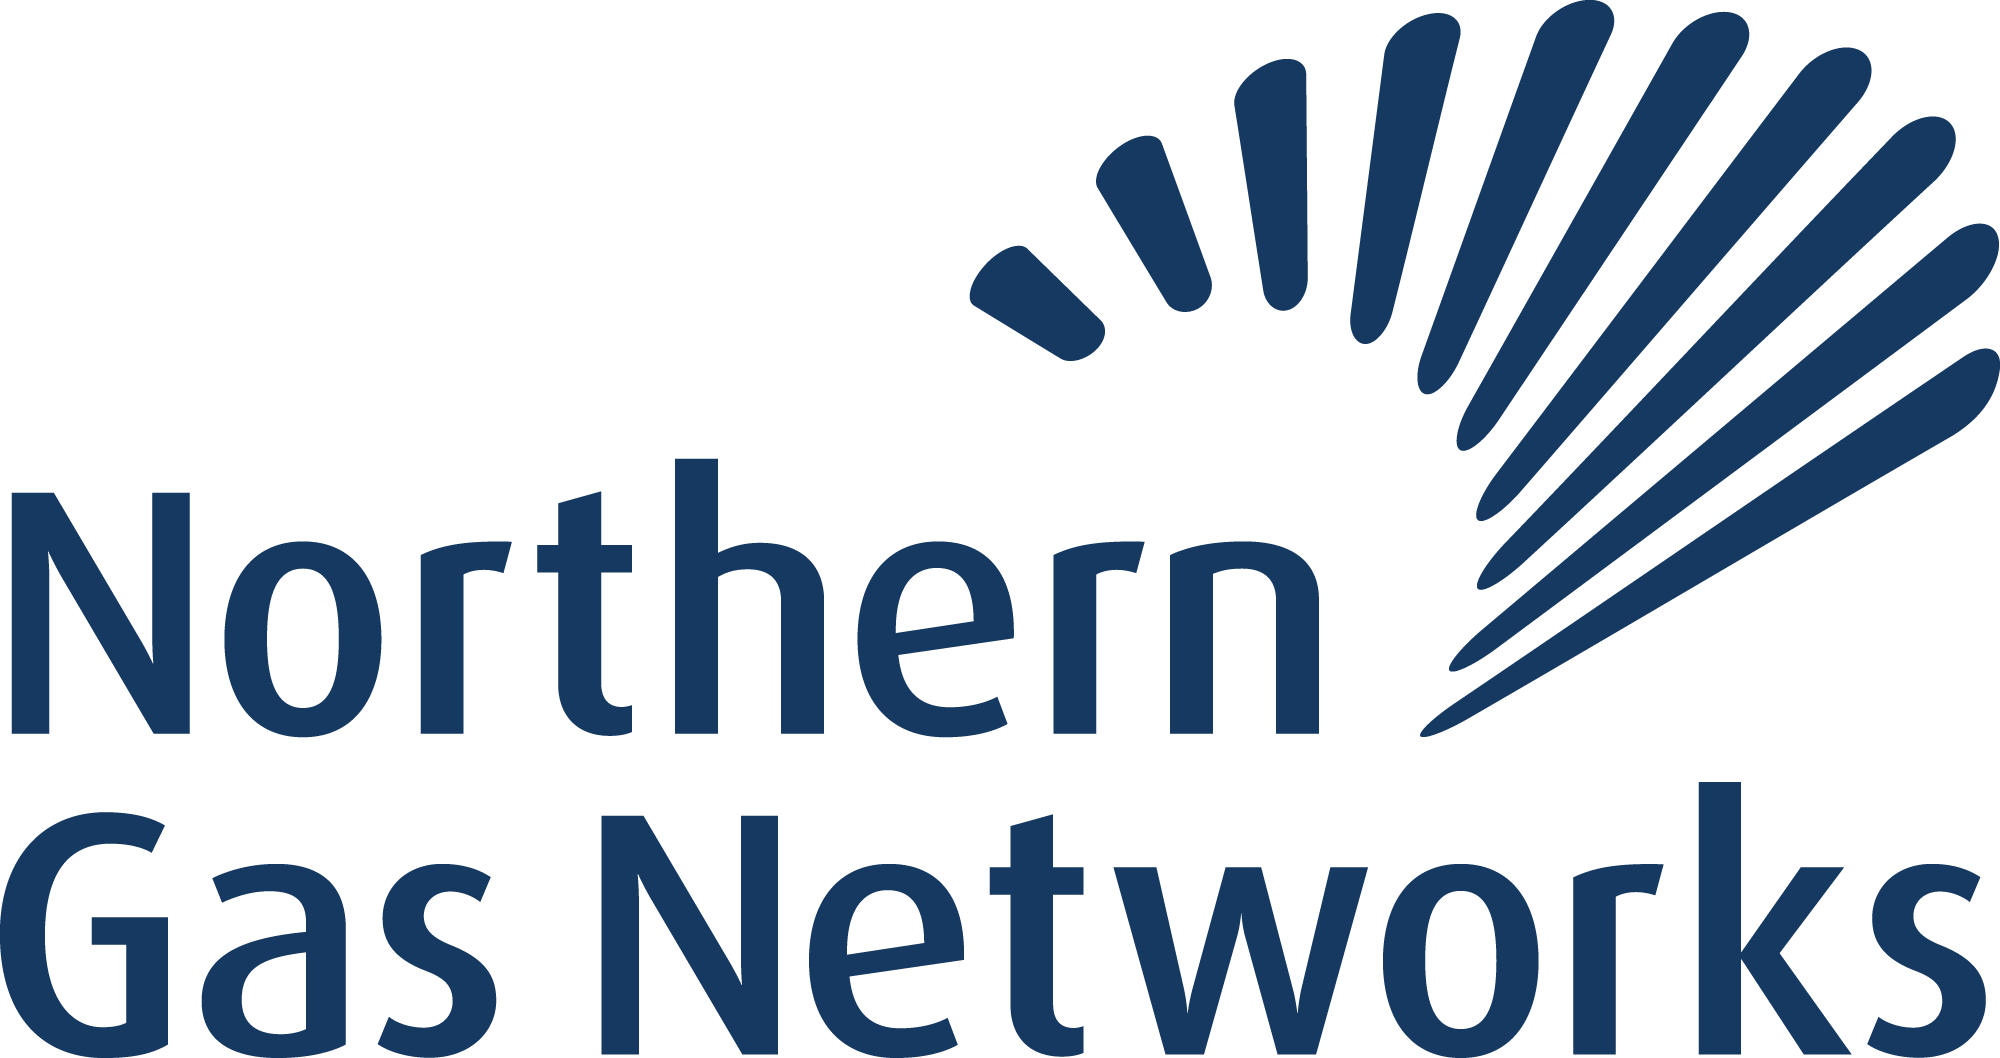 Northern Gas Netwrorks